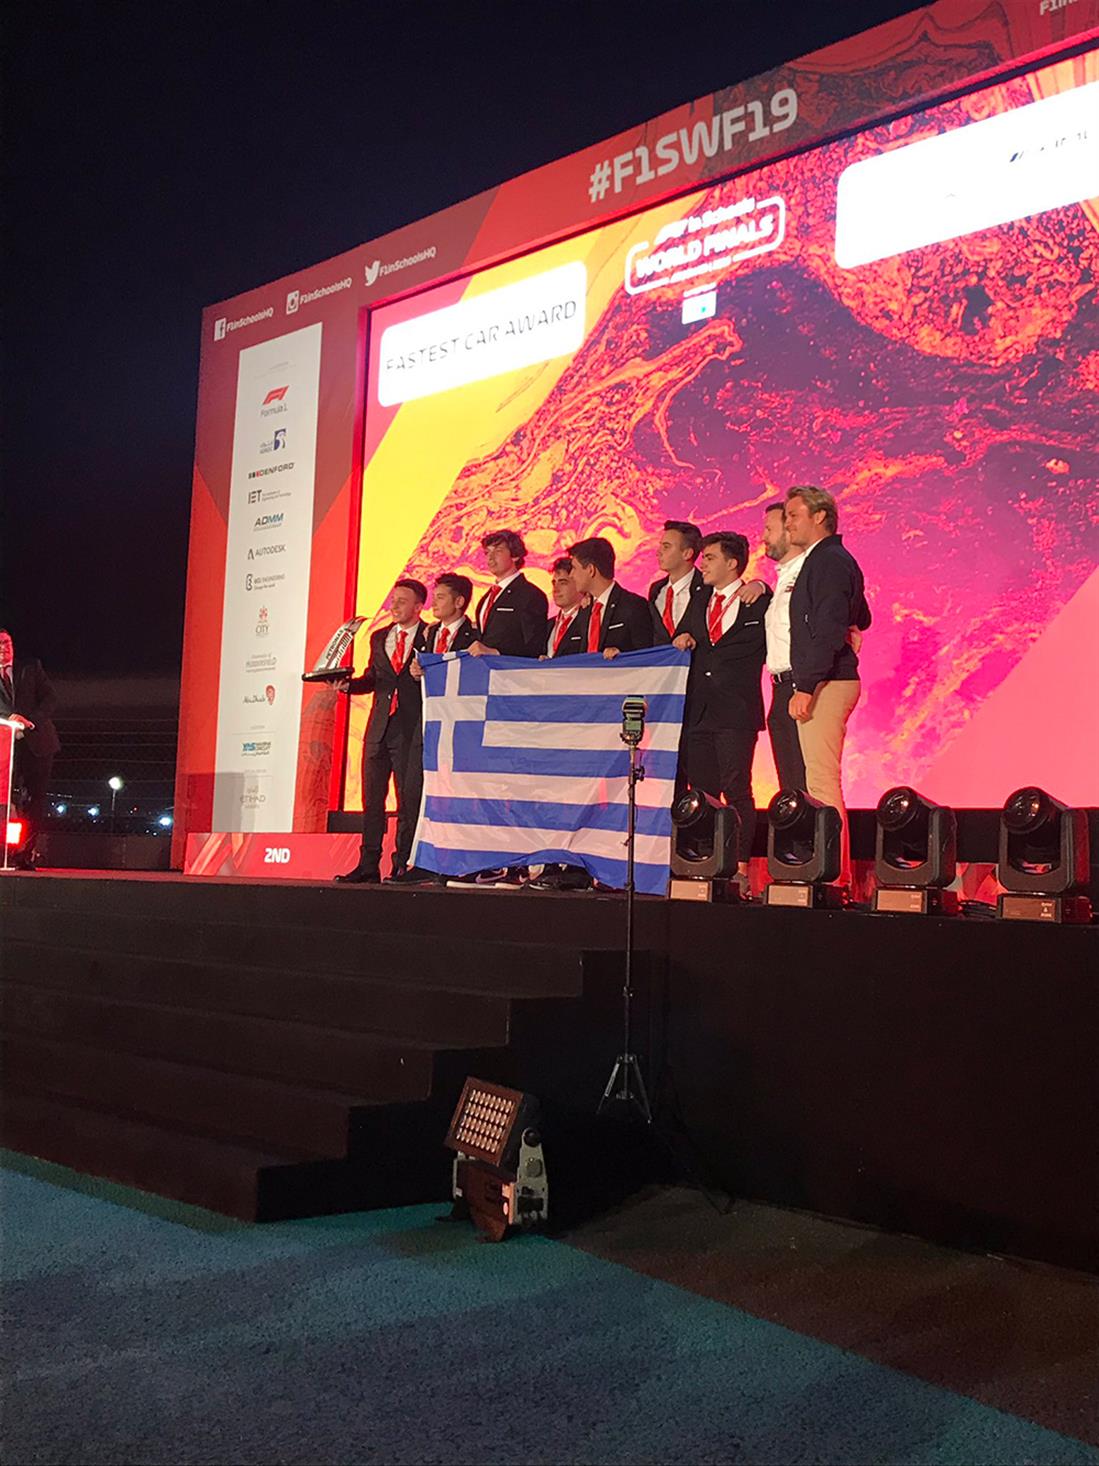 Βραβείο - Ταχύτερο Αυτοκίνητο στον Κόσμο - Παγκόσμιος Τελικός F1 in Schools - μαθητές - 1ο Γενικό Λύκειο Πανοράματος Θεσσαλονίκης - Εκπαιδευτήρια Αντωνόπουλου «Εκπαιδευτική Αναγέννηση»